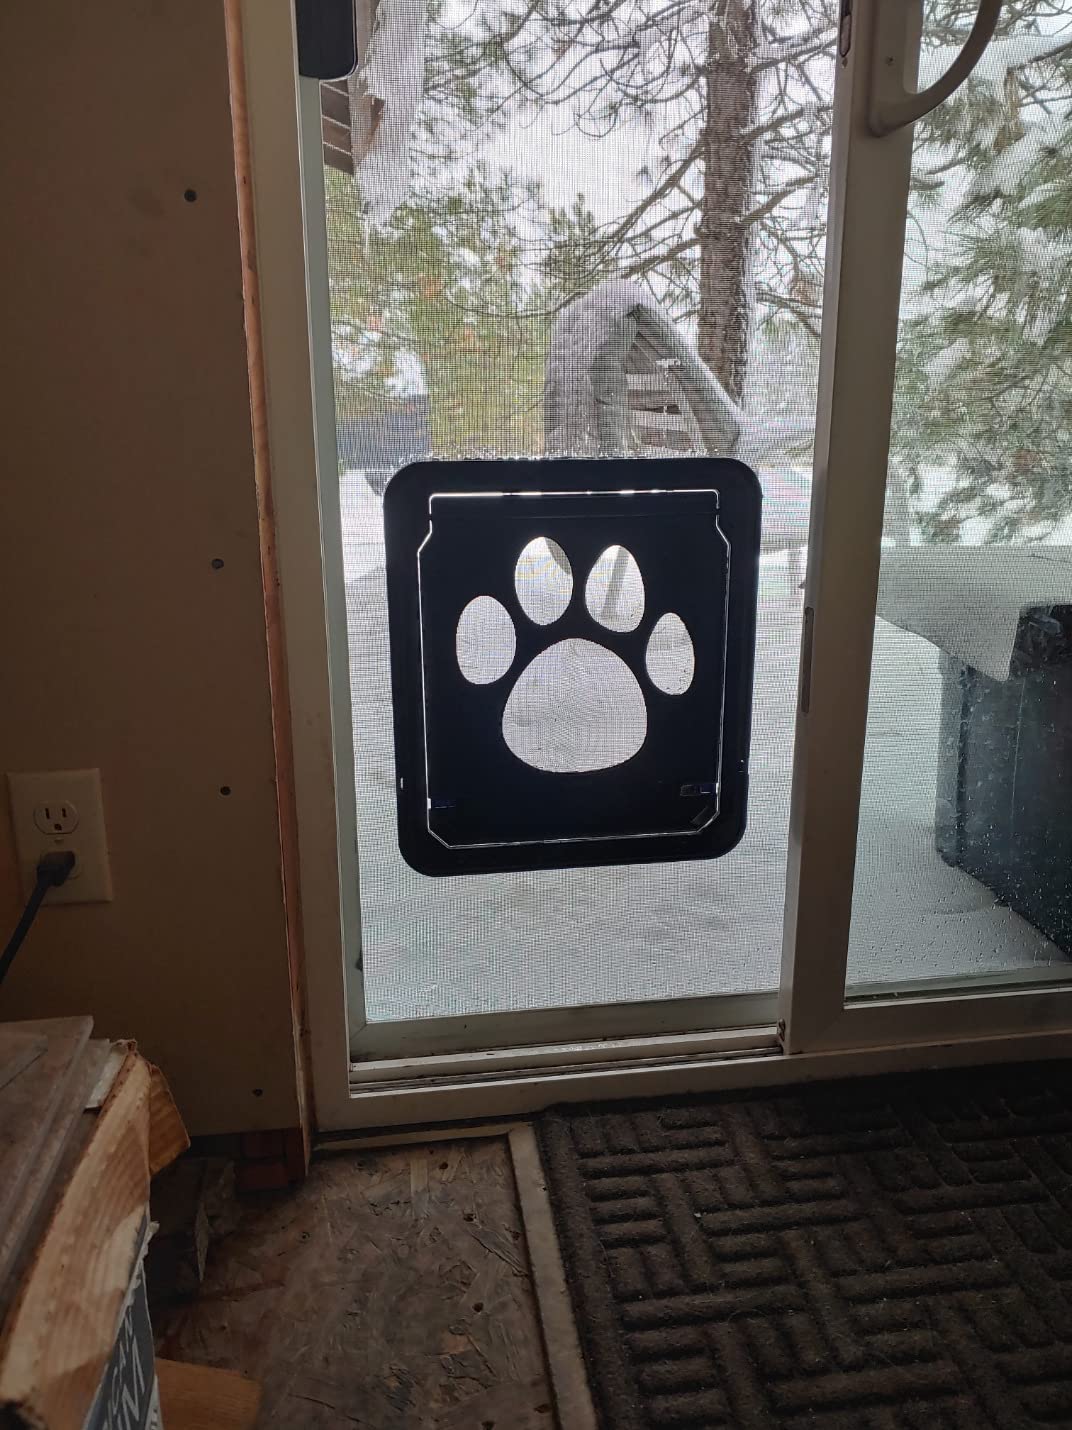 Lockable Pet Door For Home Door Access - Gray photo review